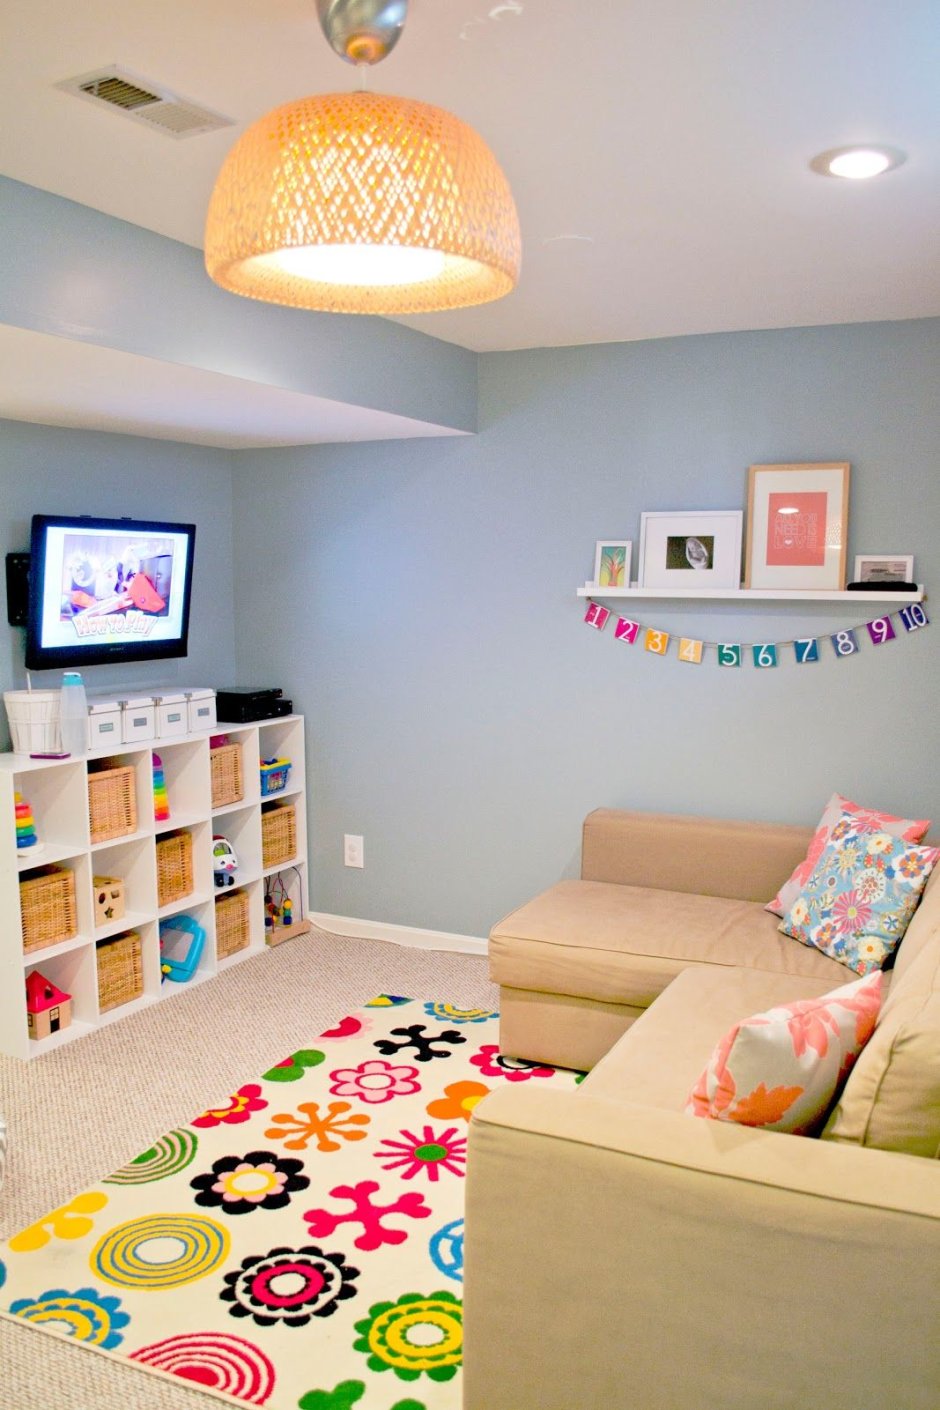 Интерьер детской комнаты с диваном